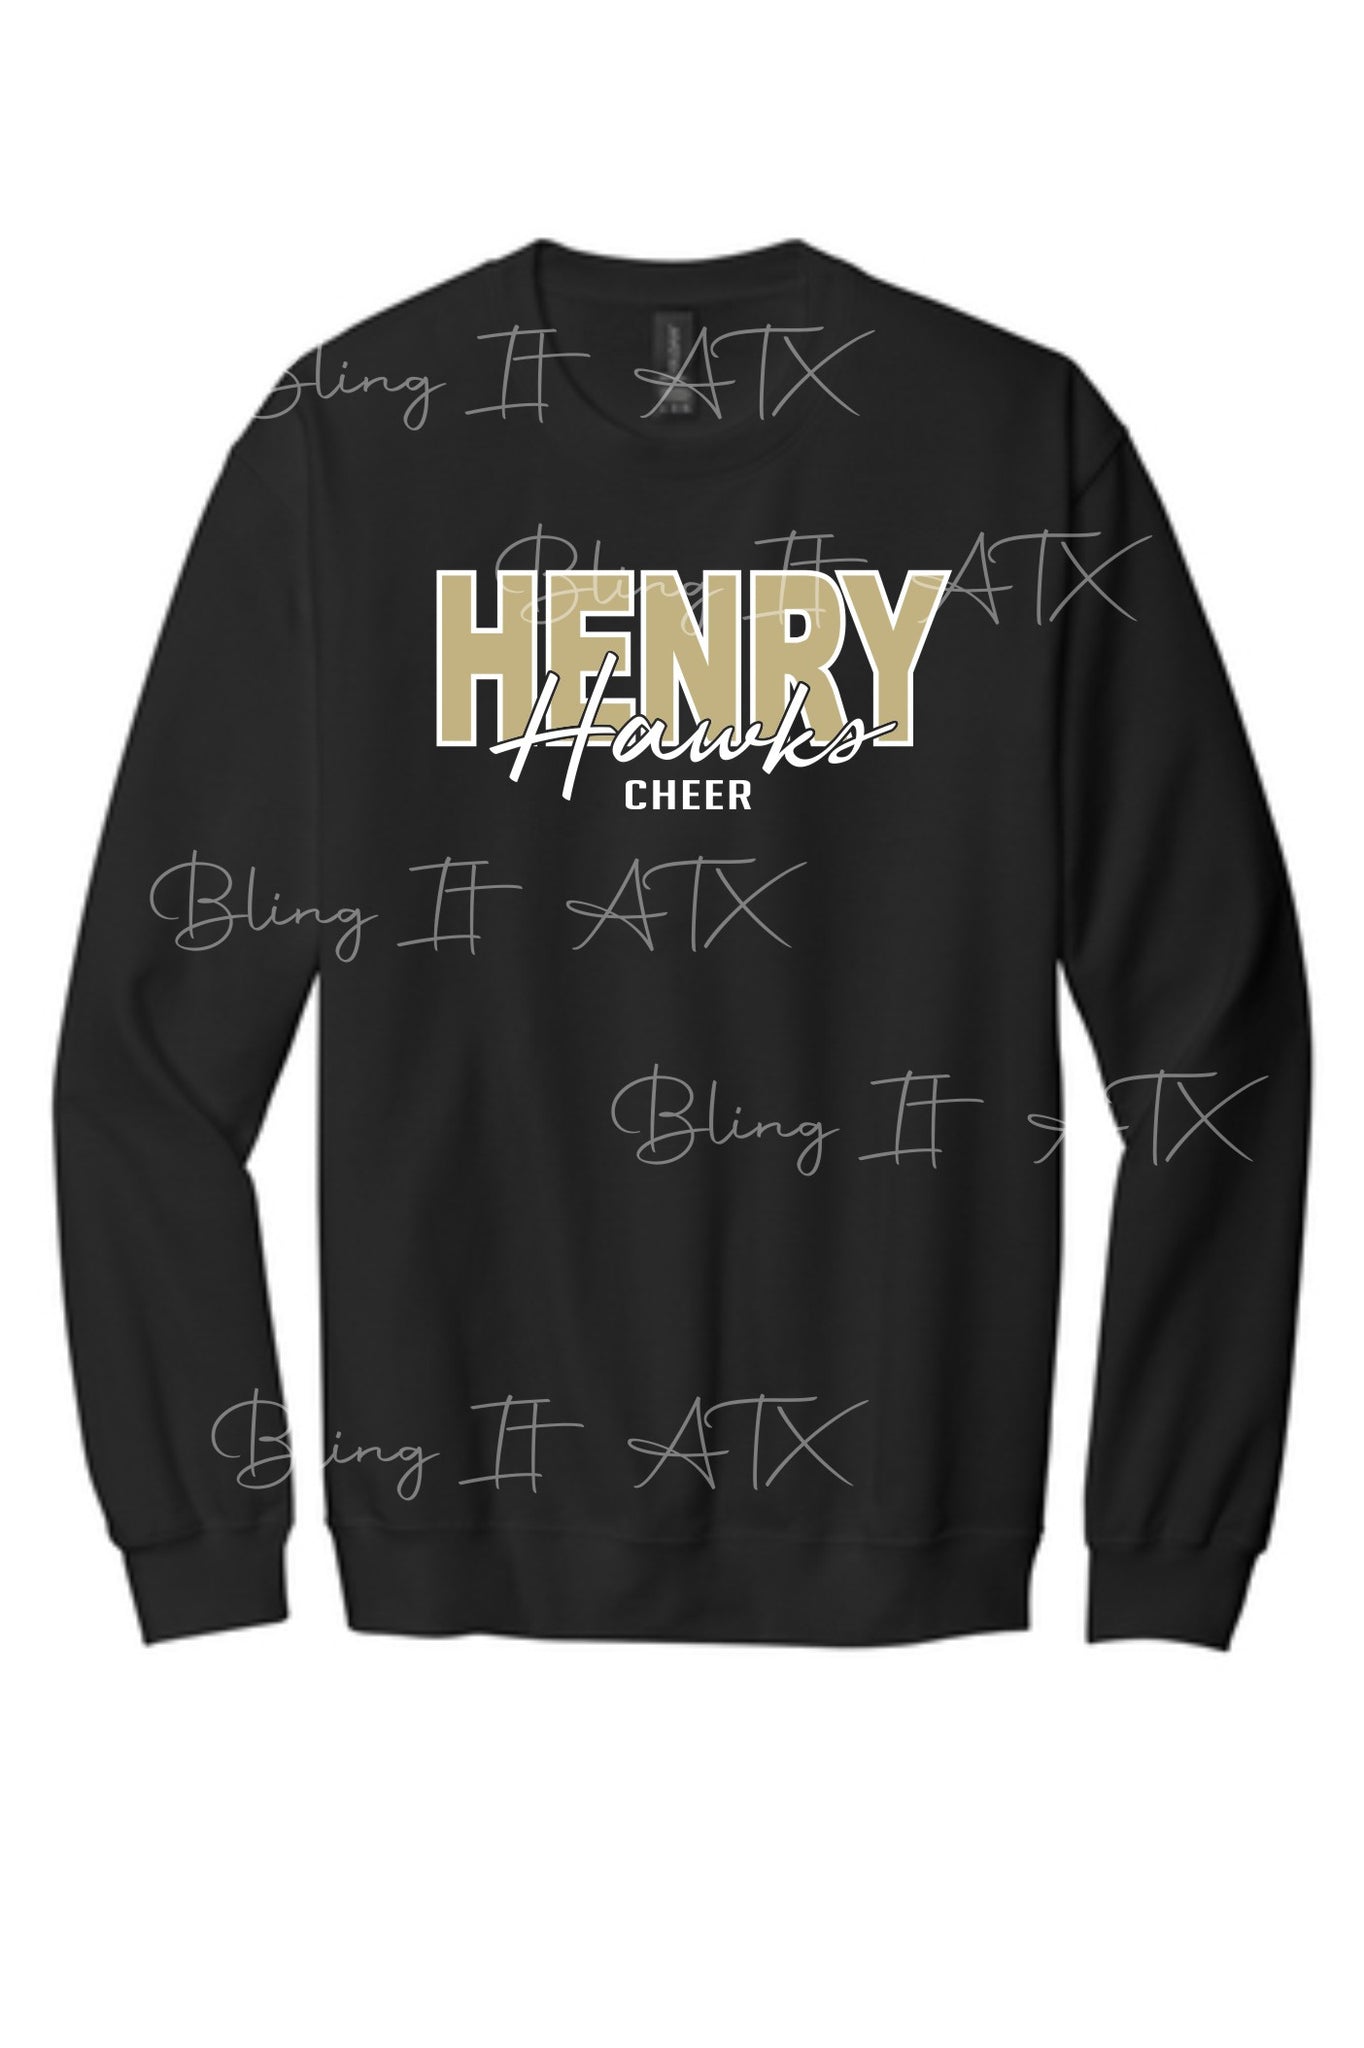 Henry Middle School sweatshirt